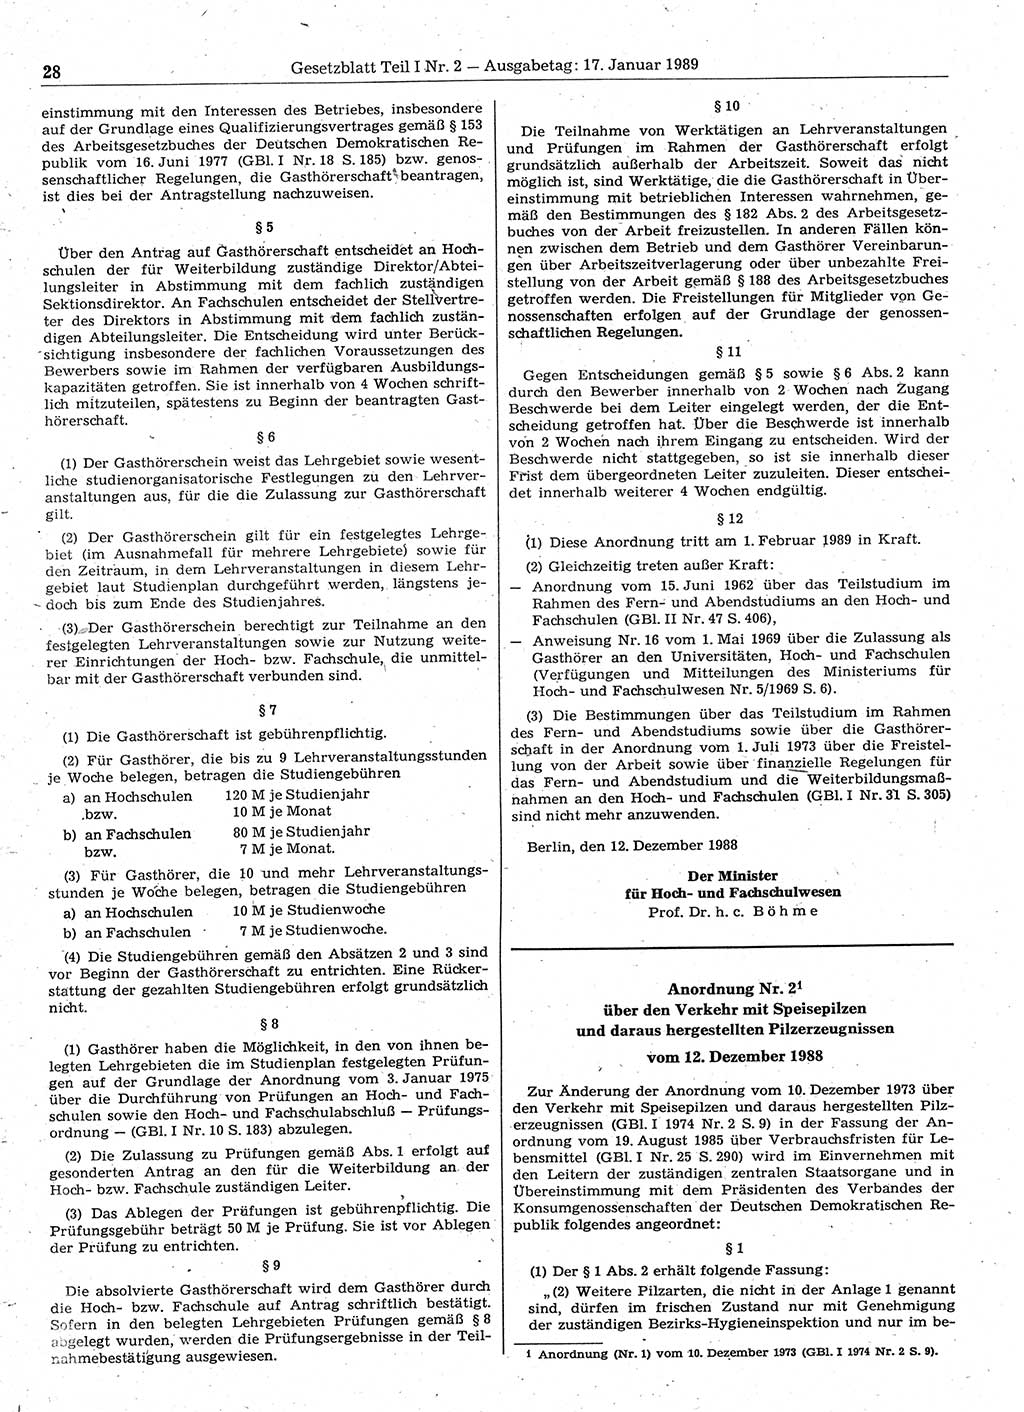 Gesetzblatt (GBl.) der Deutschen Demokratischen Republik (DDR) Teil Ⅰ 1989, Seite 28 (GBl. DDR Ⅰ 1989, S. 28)